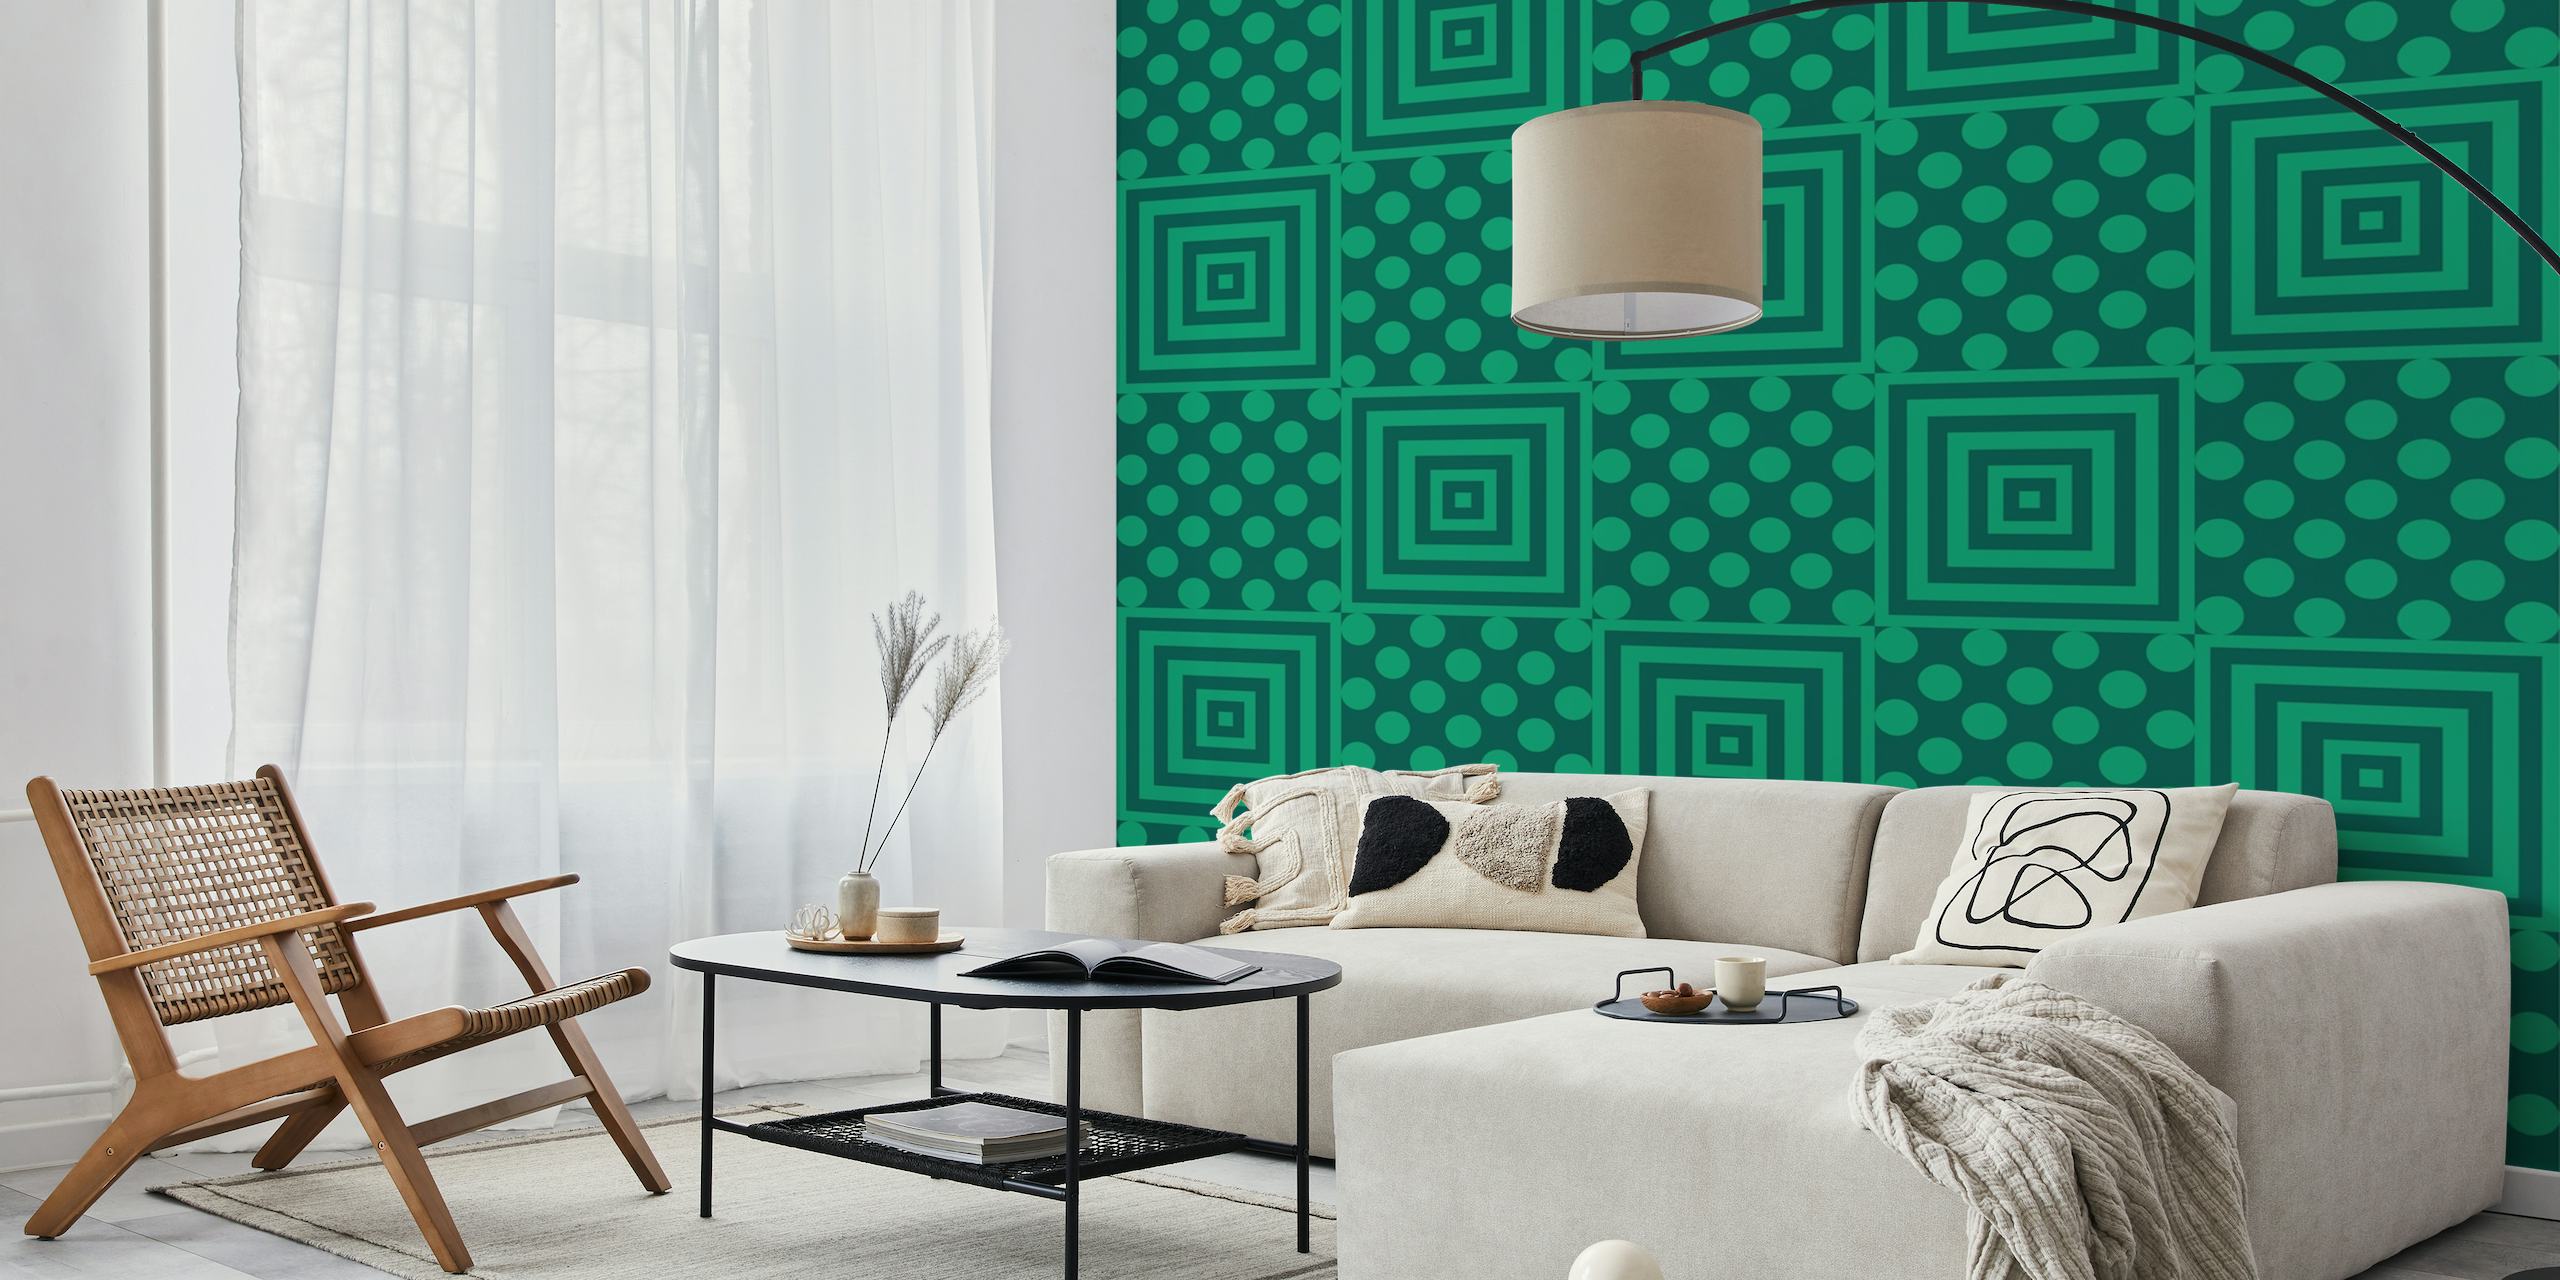 Green abstract square polkadots pattern wallpaper